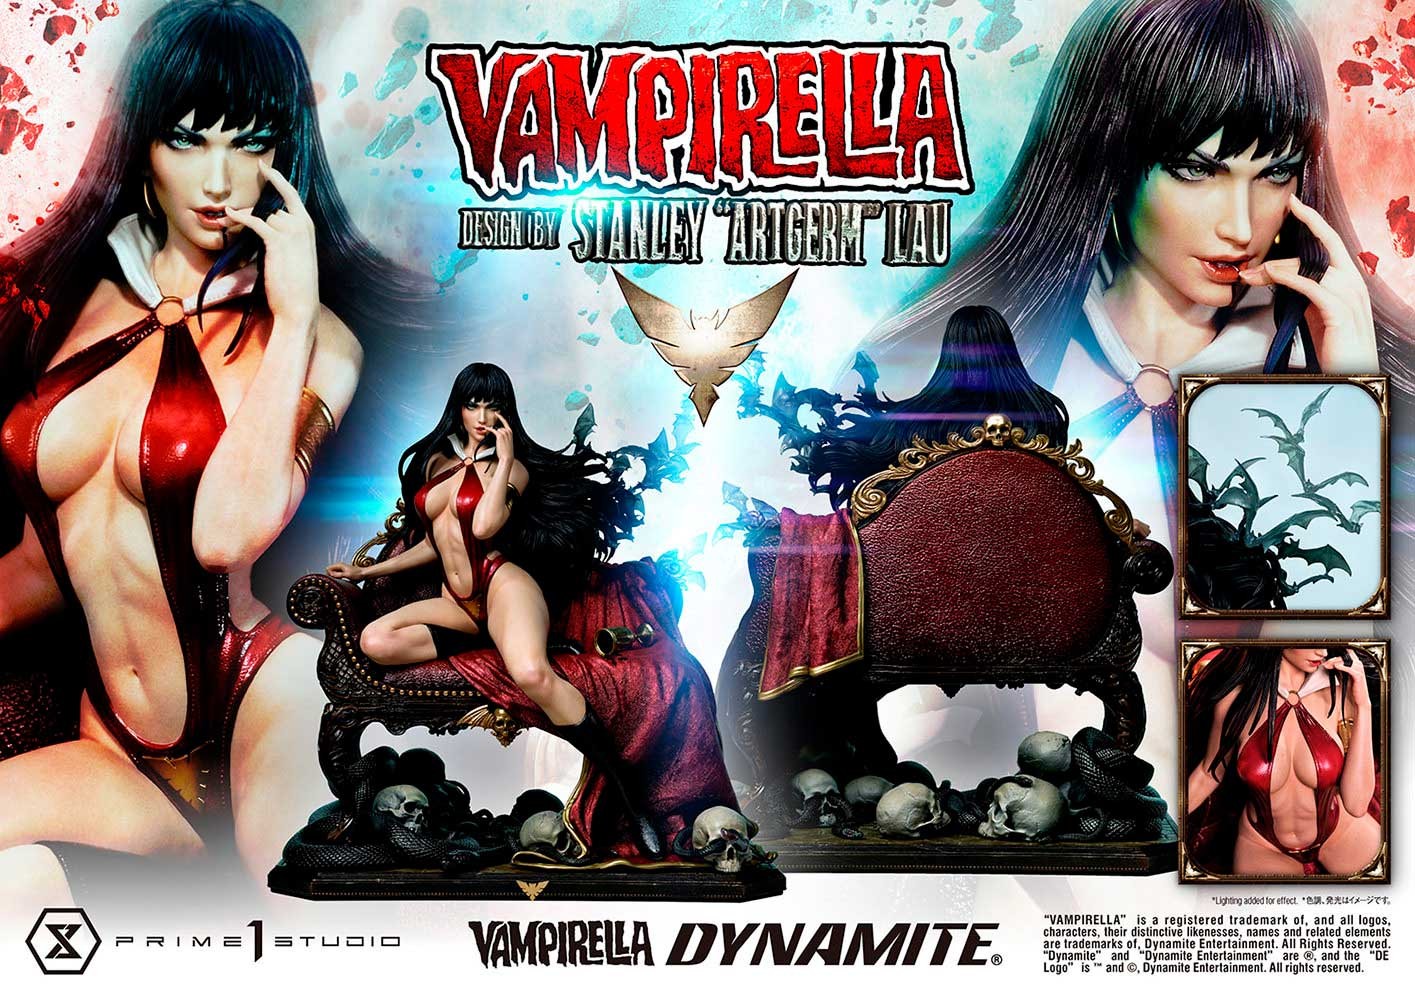 Vampirella (Bonus Version)